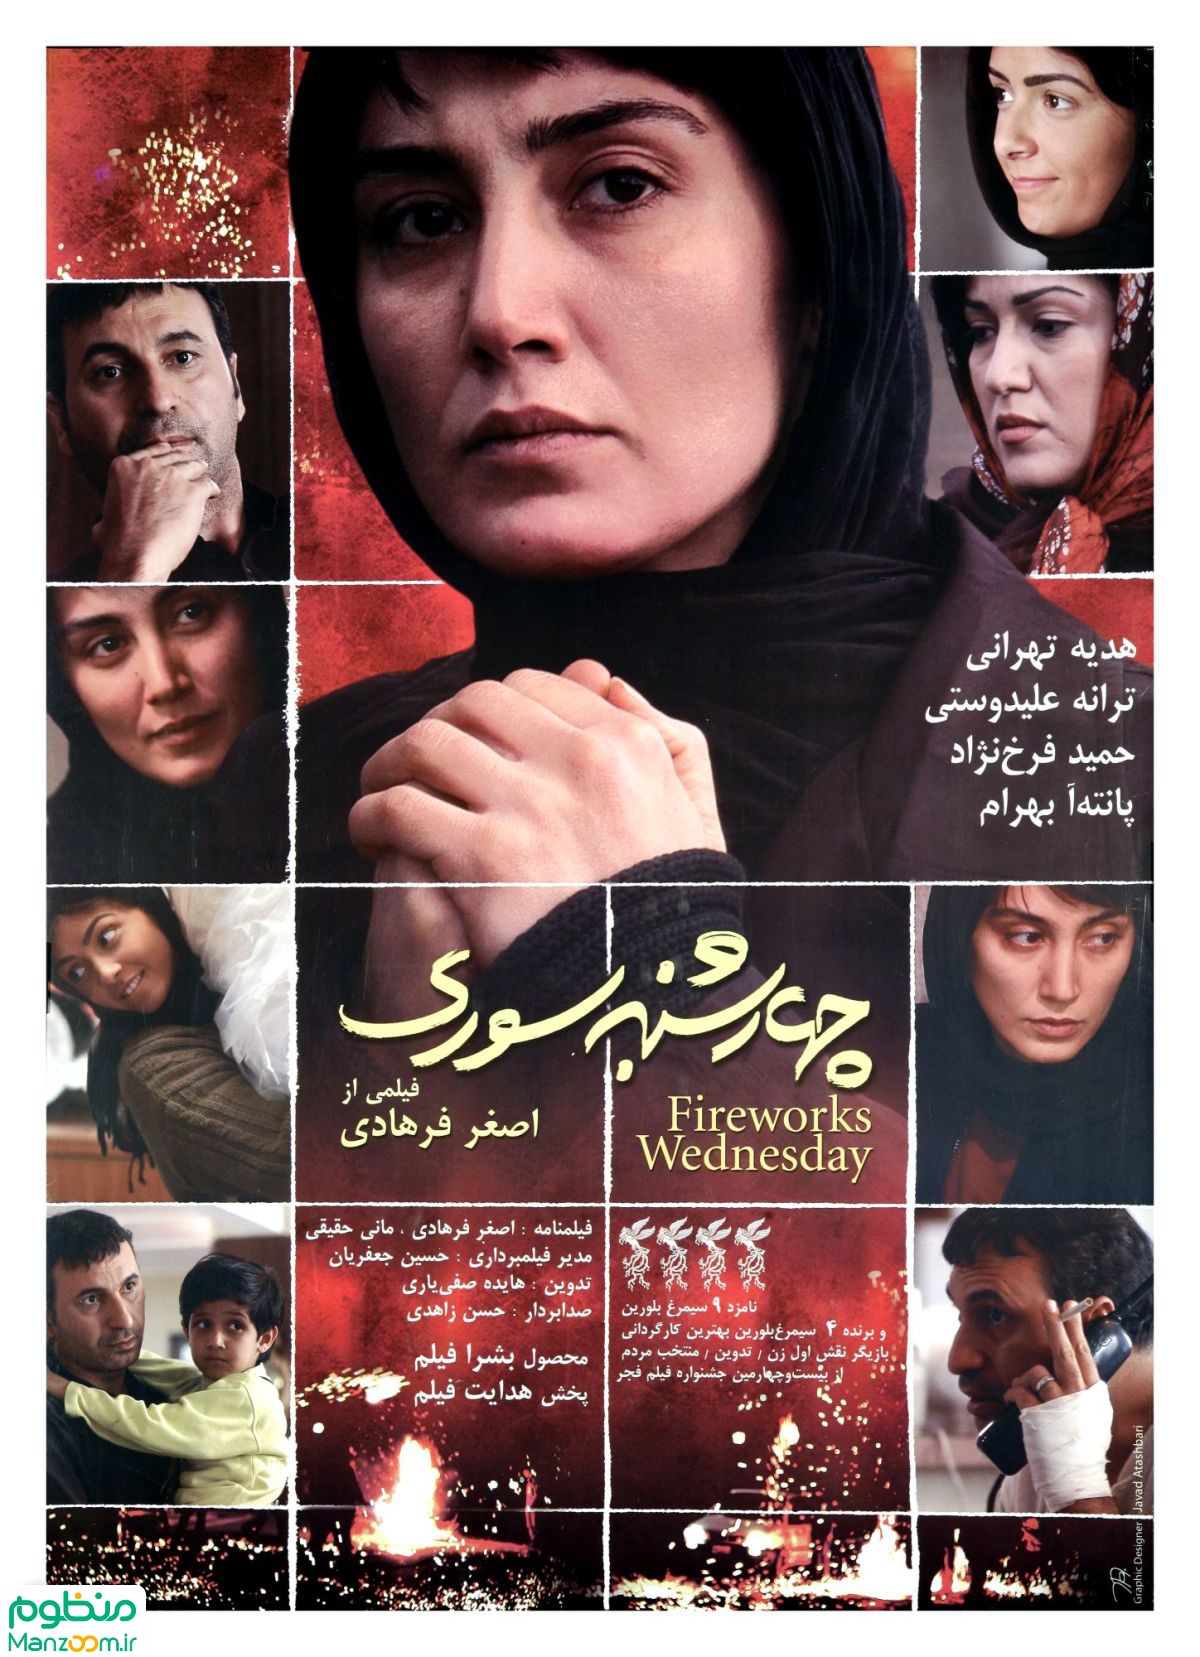  فیلم سینمایی چهارشنبه سوری به کارگردانی اصغر فرهادی